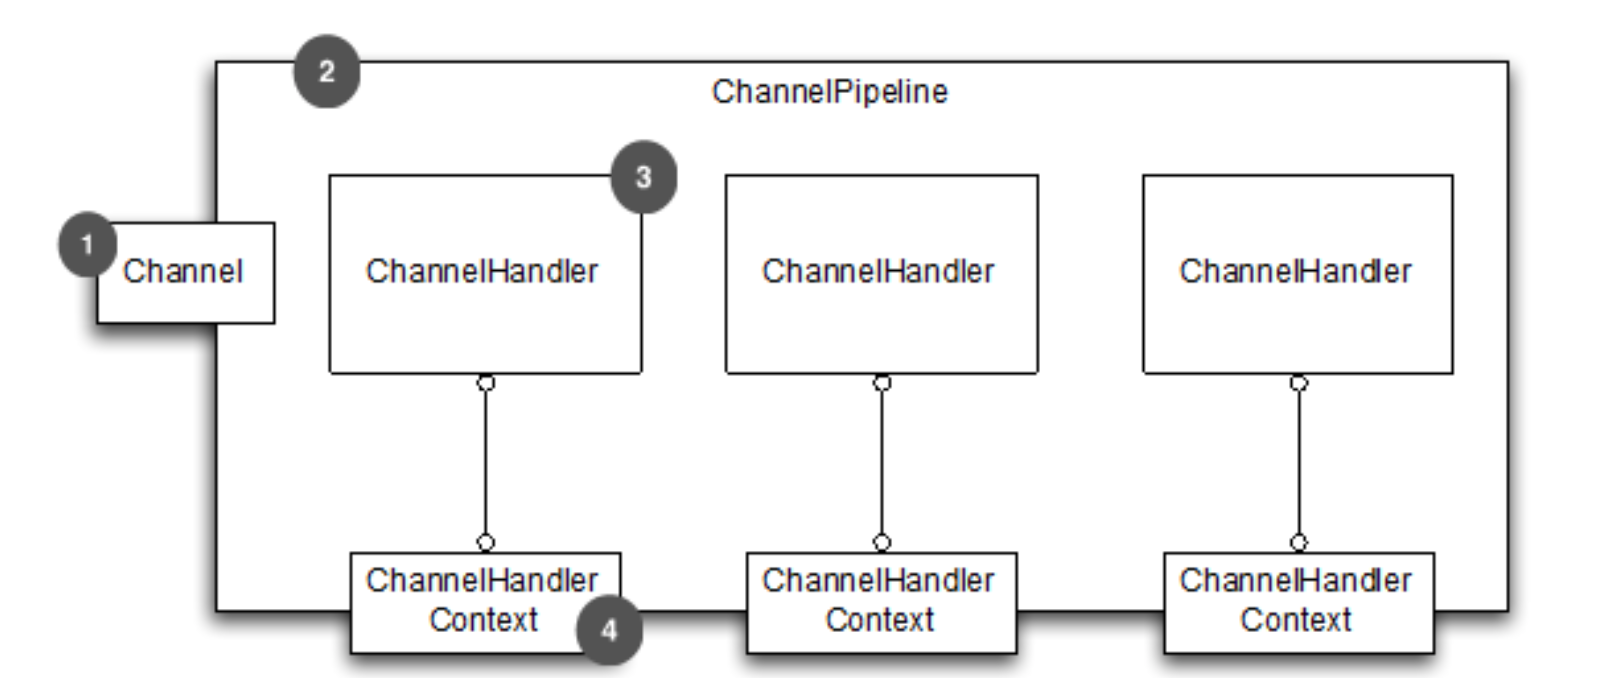 ChannelHandlerContext、ChannelHandler与ChannelPipline关系图